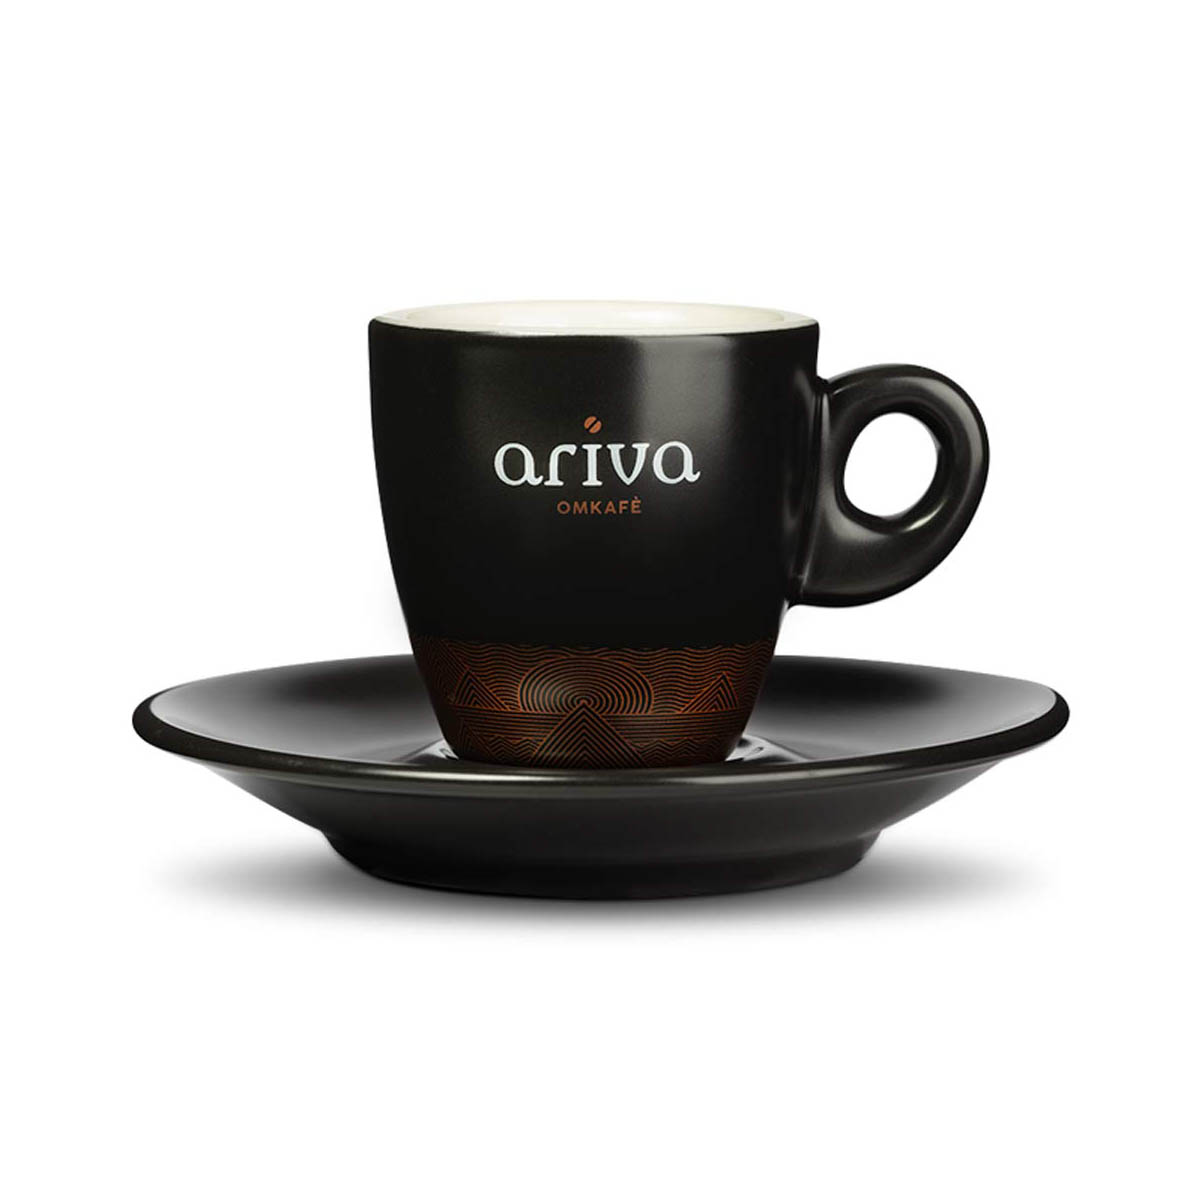 Omkafè Ariva Espressotasse plus Untertasse online kaufen bei Kaffee Rauscher